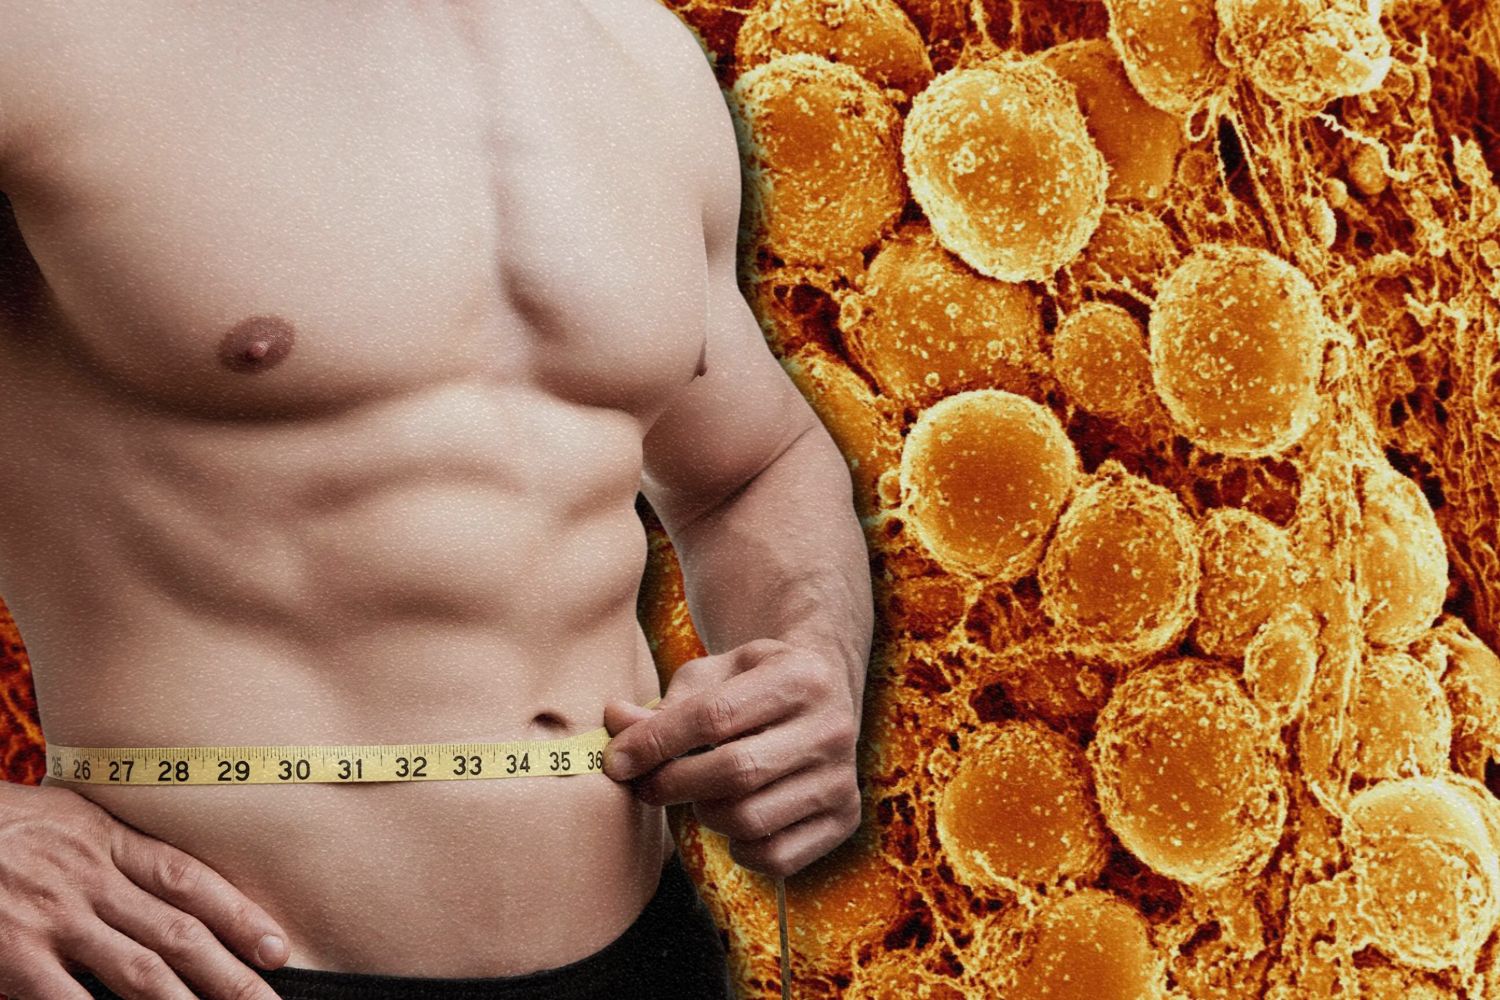 Avance de la "grasa beige": La quema de calorías podría revolucionar la pérdida de peso